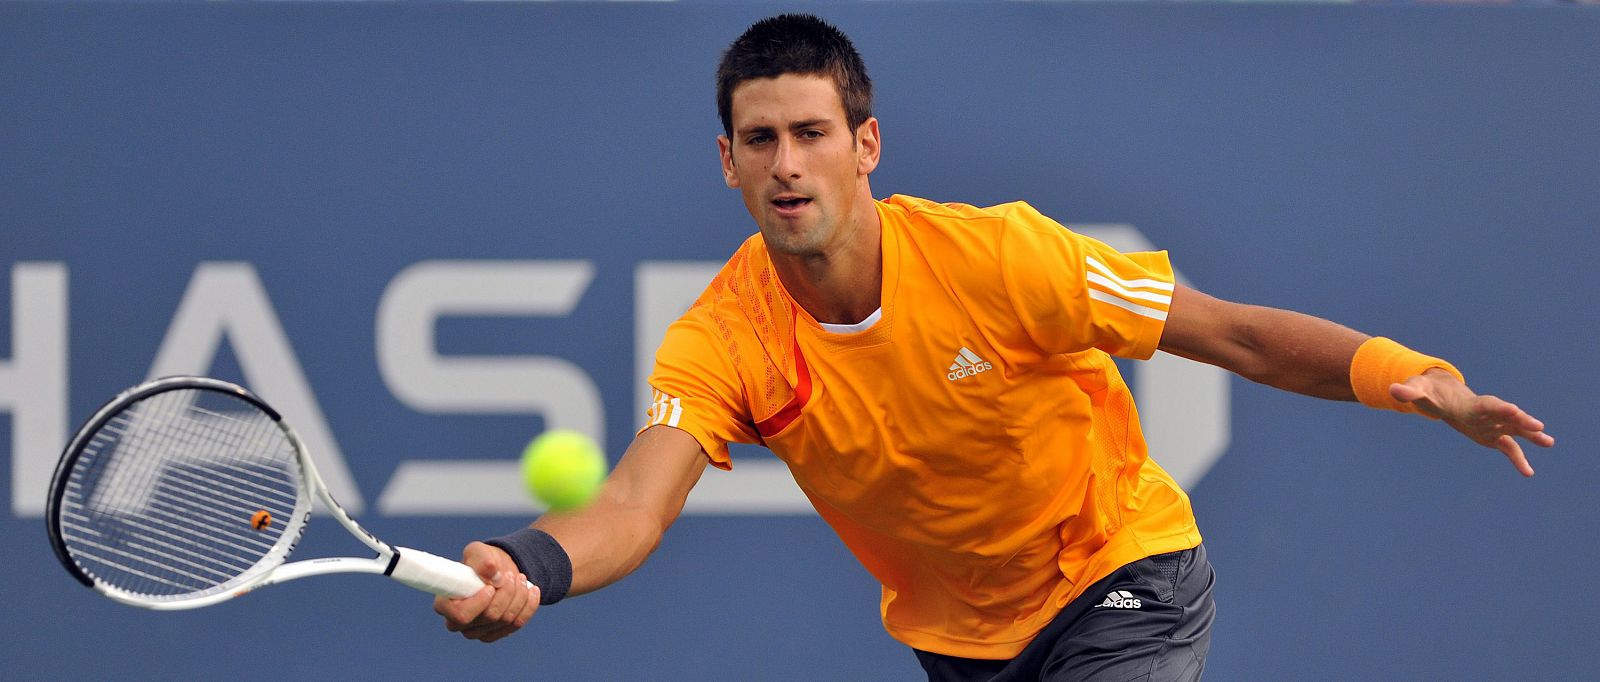 El tenista serbio Novak Djokovic devuelve una bola